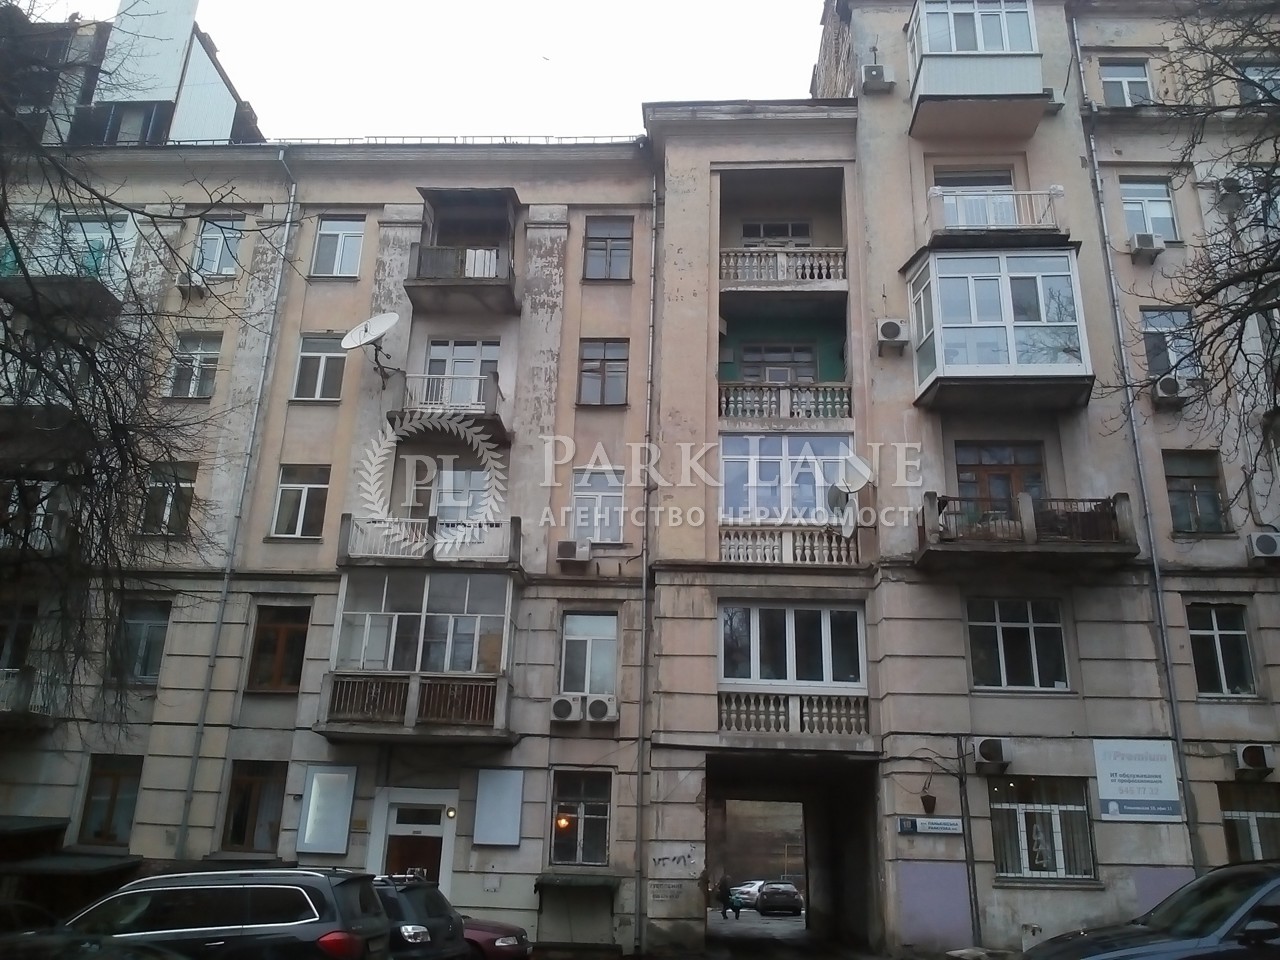  Нежилое помещение, ул. Паньковская, Киев, G-816318 - Фото 7